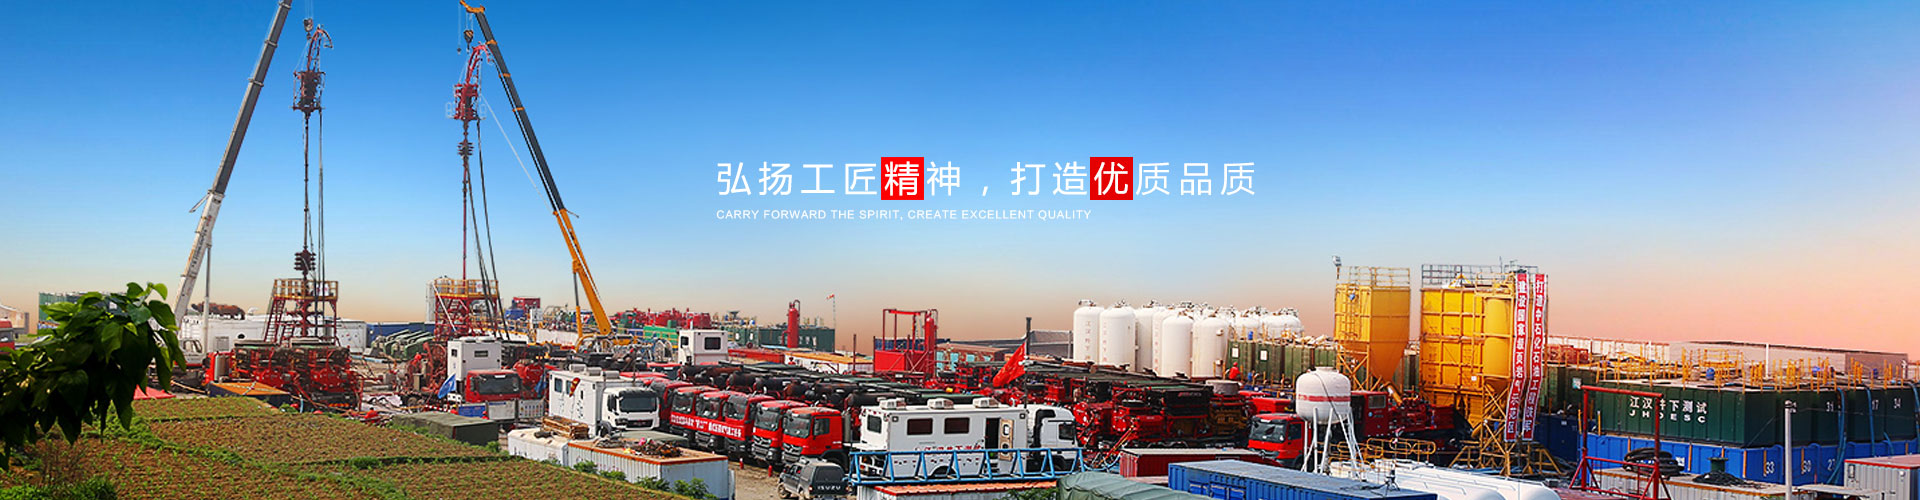 濮阳市宇飞石油机械设备有限公司